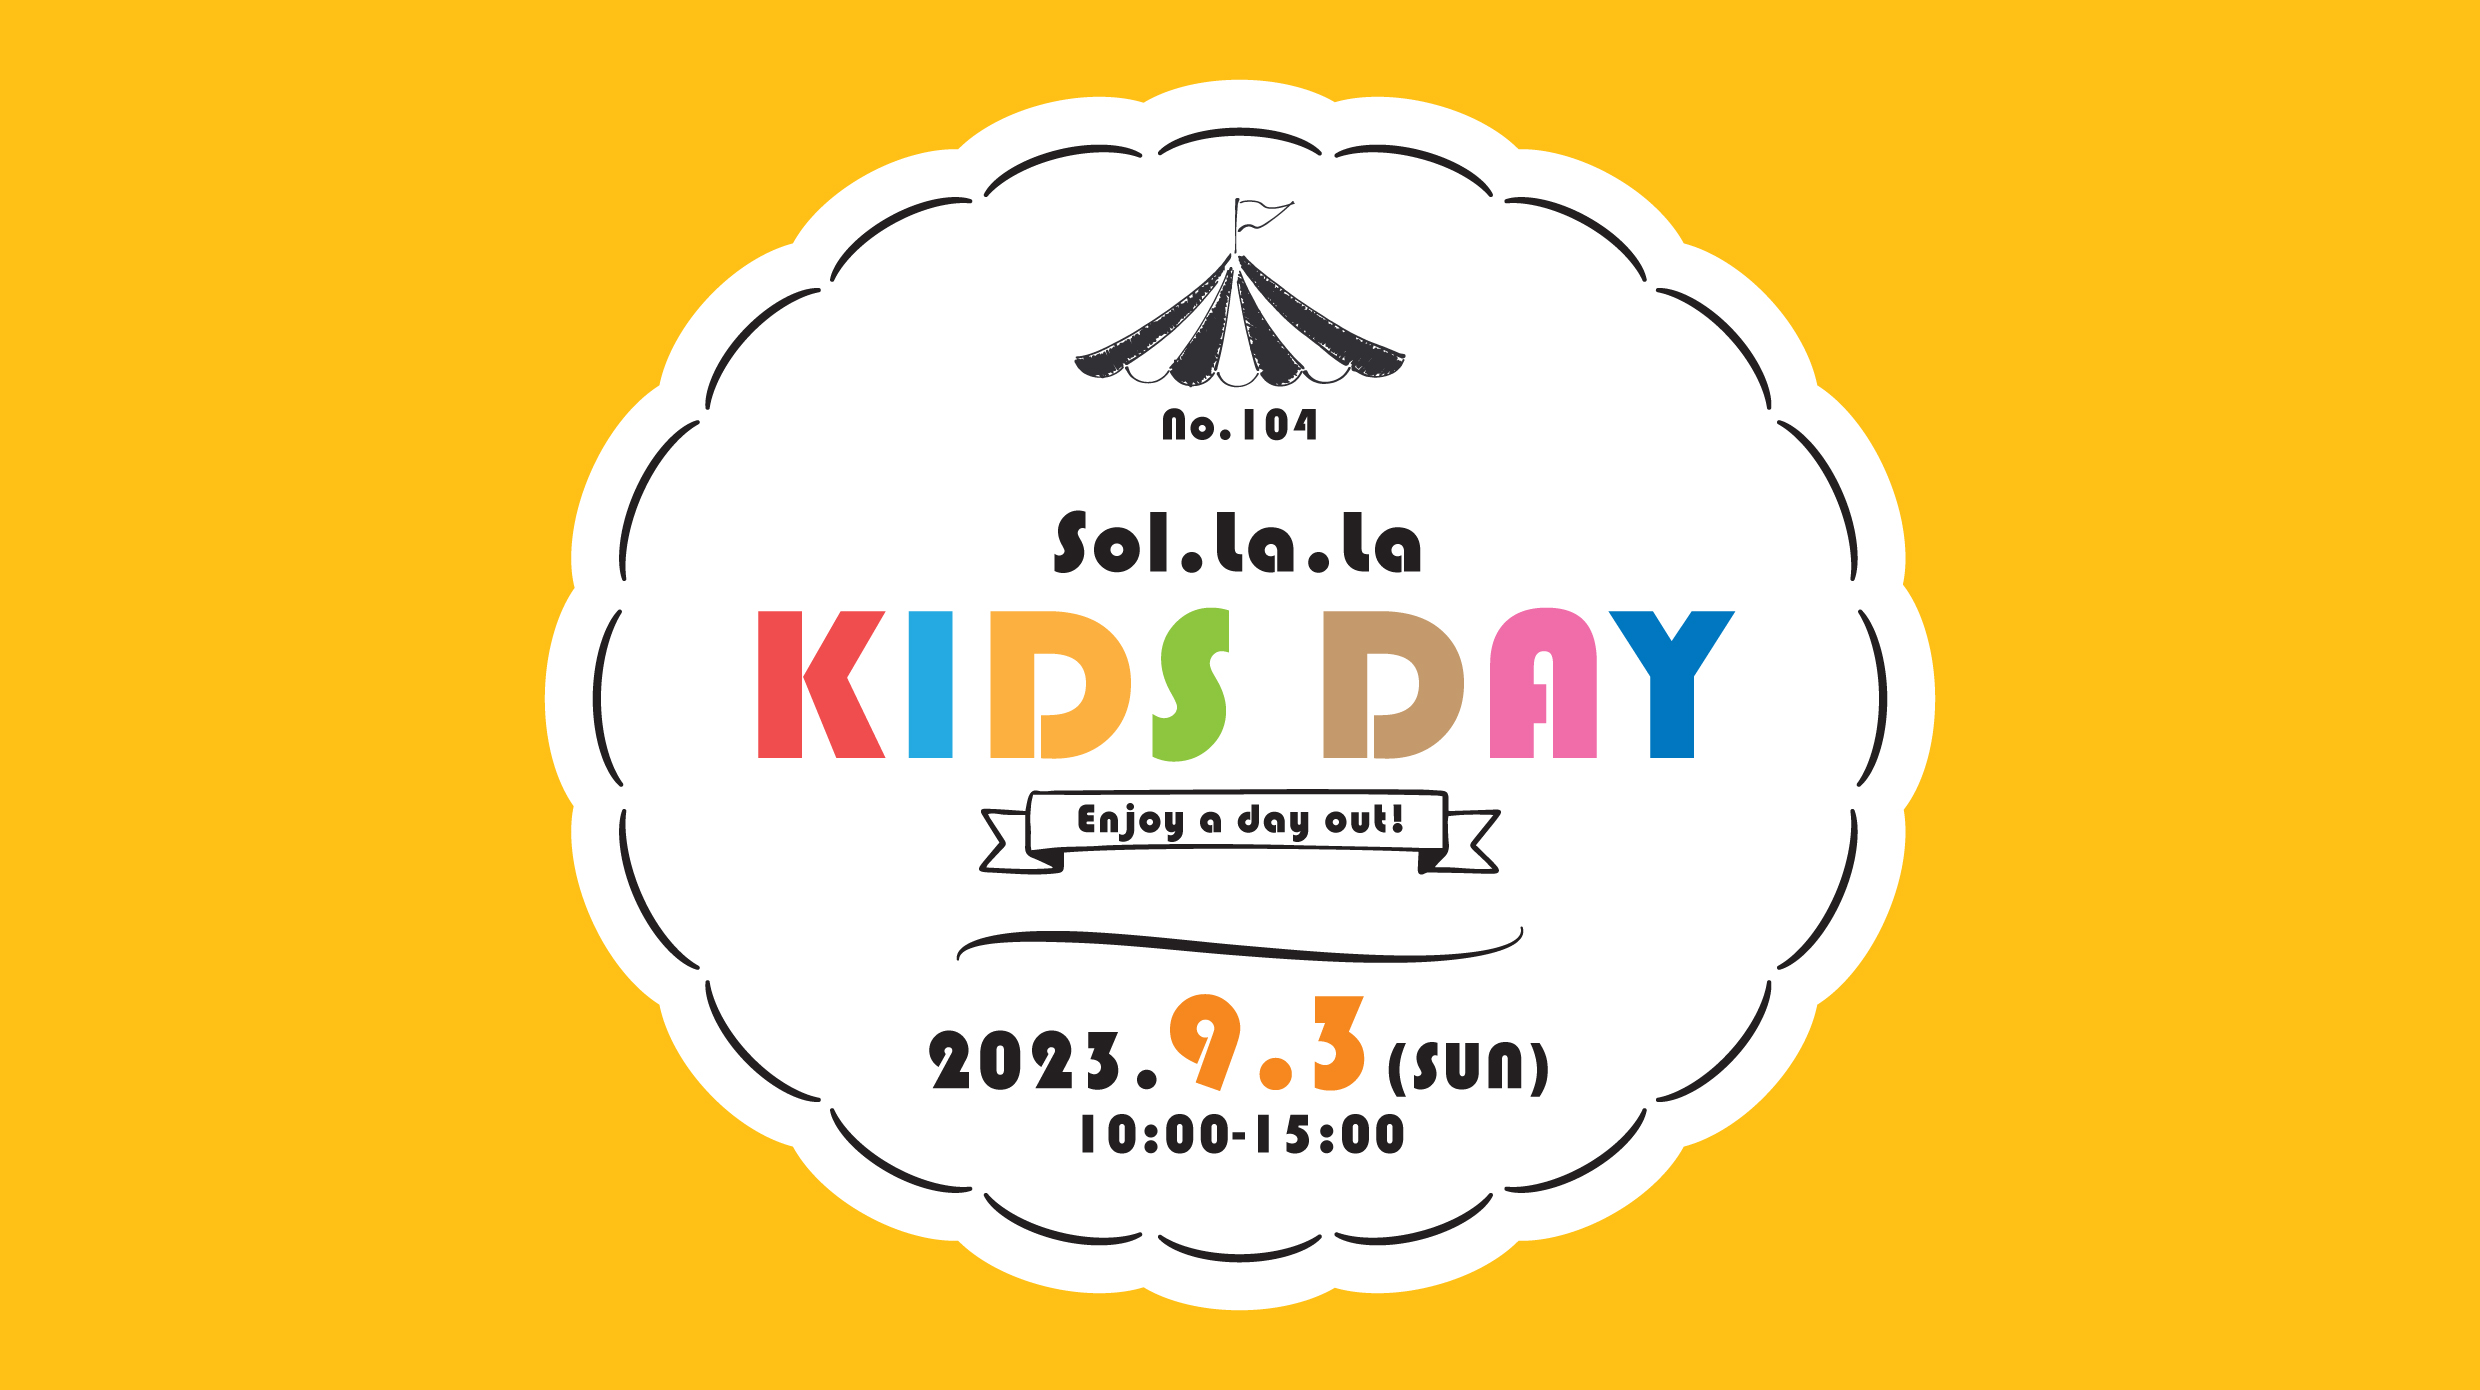 9月3日（日曜日）は「Sol・la・la KIDS DAY」を開催します！